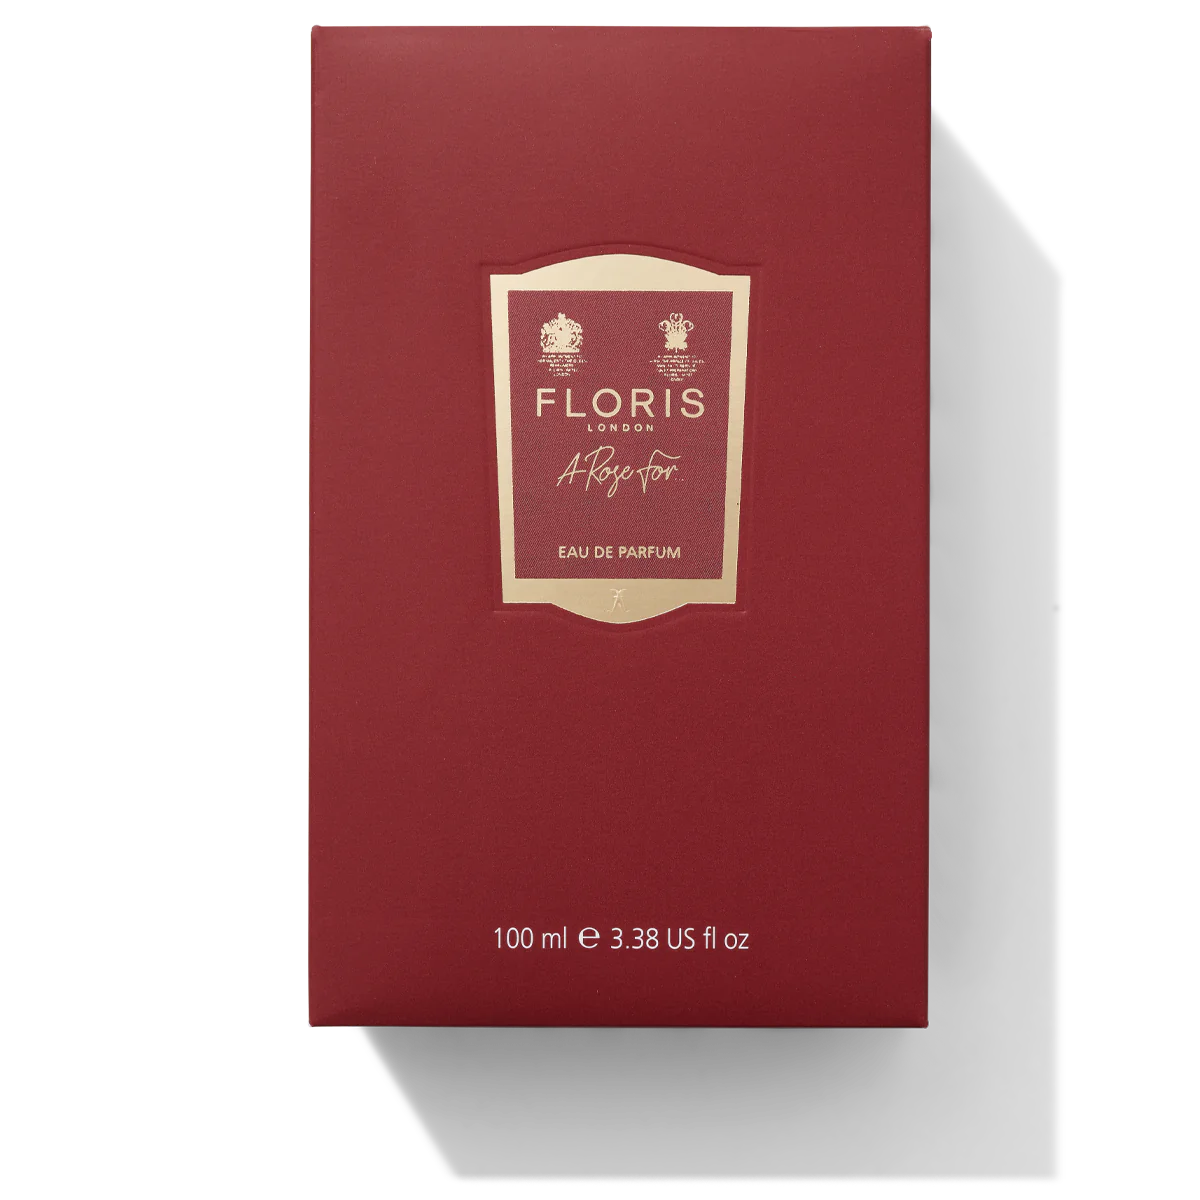 Floris London A Rose For... Eau de Parfum 100ml Box